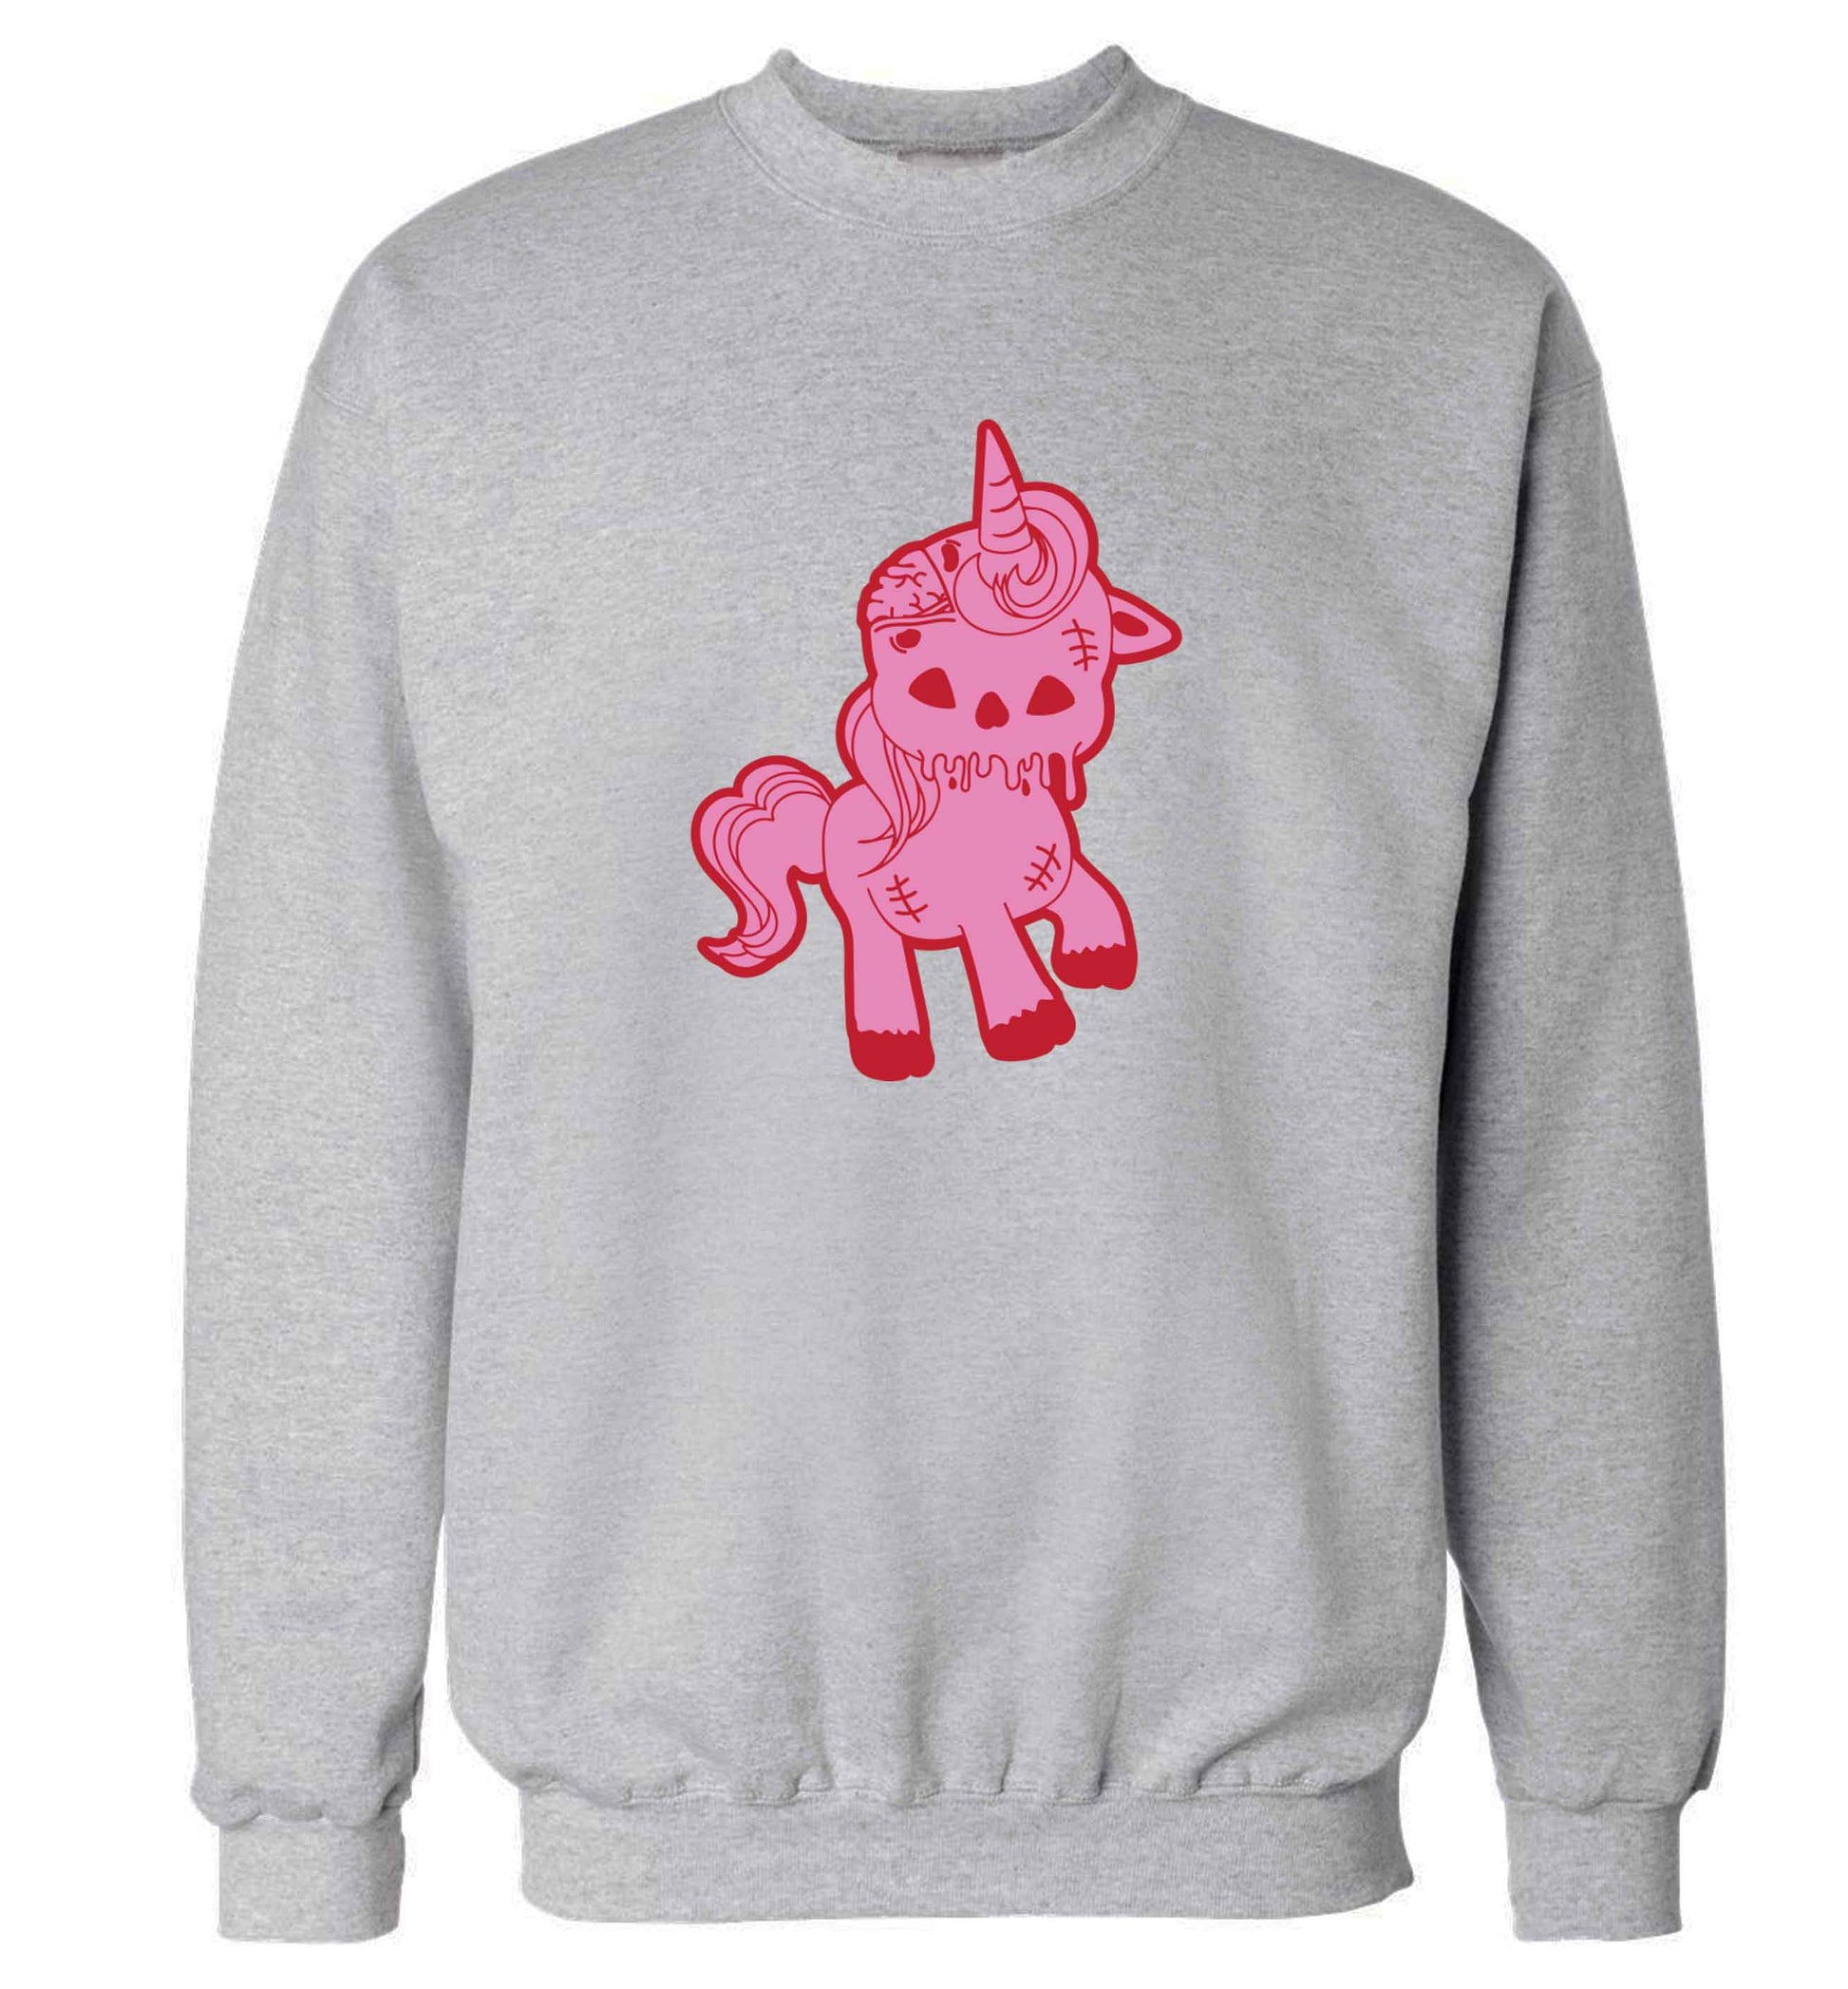 Zombie unicorn zombiecorn adult's unisex grey sweater 2XL